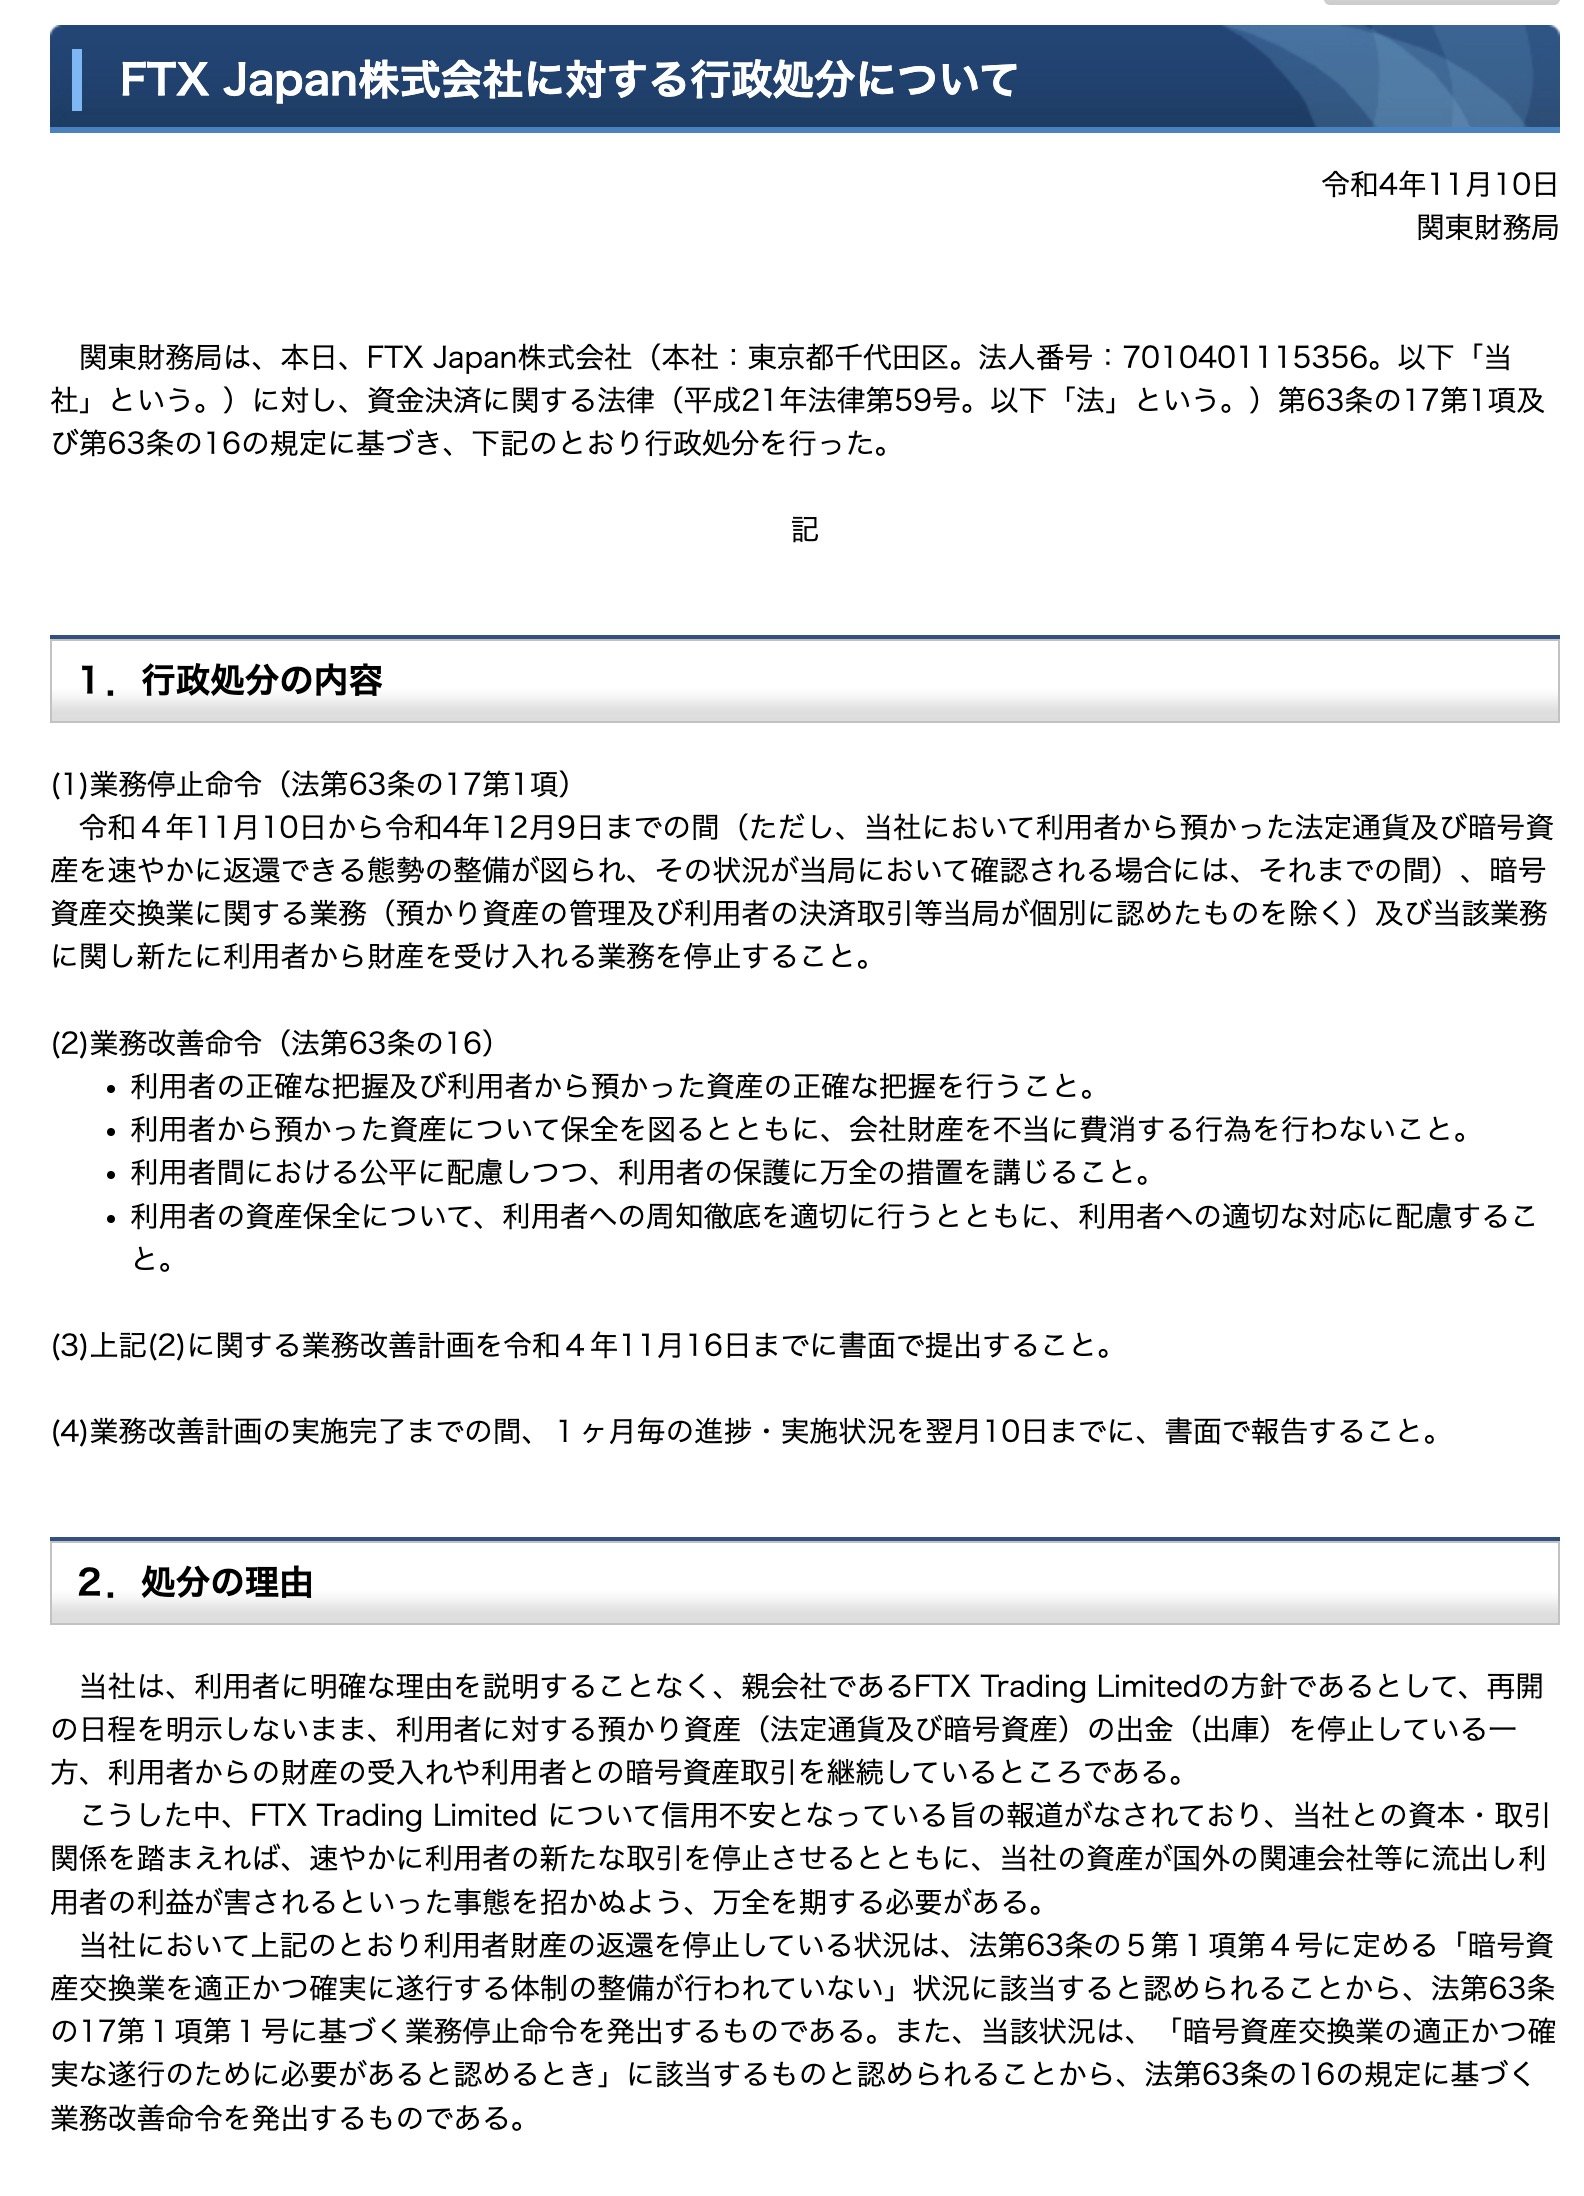 関東財務局、FTX Japanに行政処分 ユーザーの資産保全求める - ITmedia 